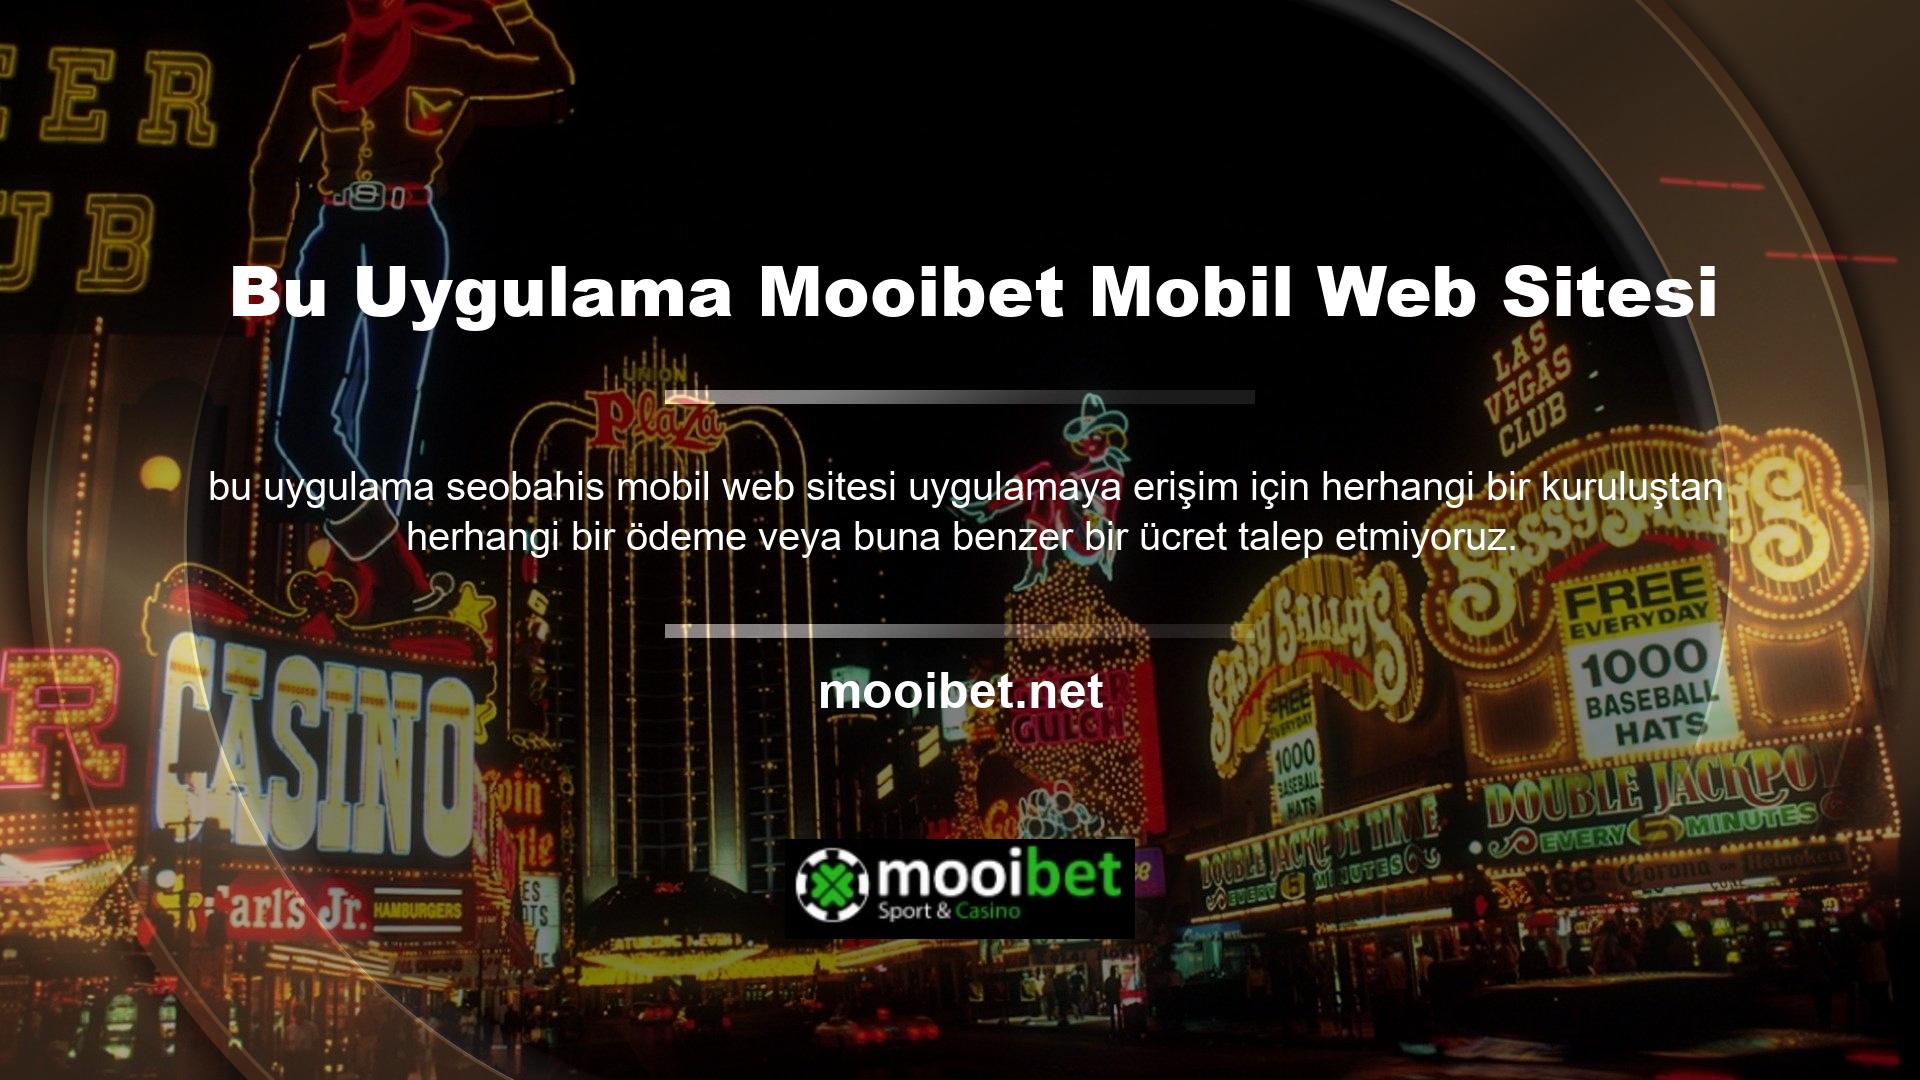 Mooibet mobil uygulaması çeşitli ücretsiz hizmetler, etkinlikler, kazanma yöntemleri ve adil bahis fırsatları sunar